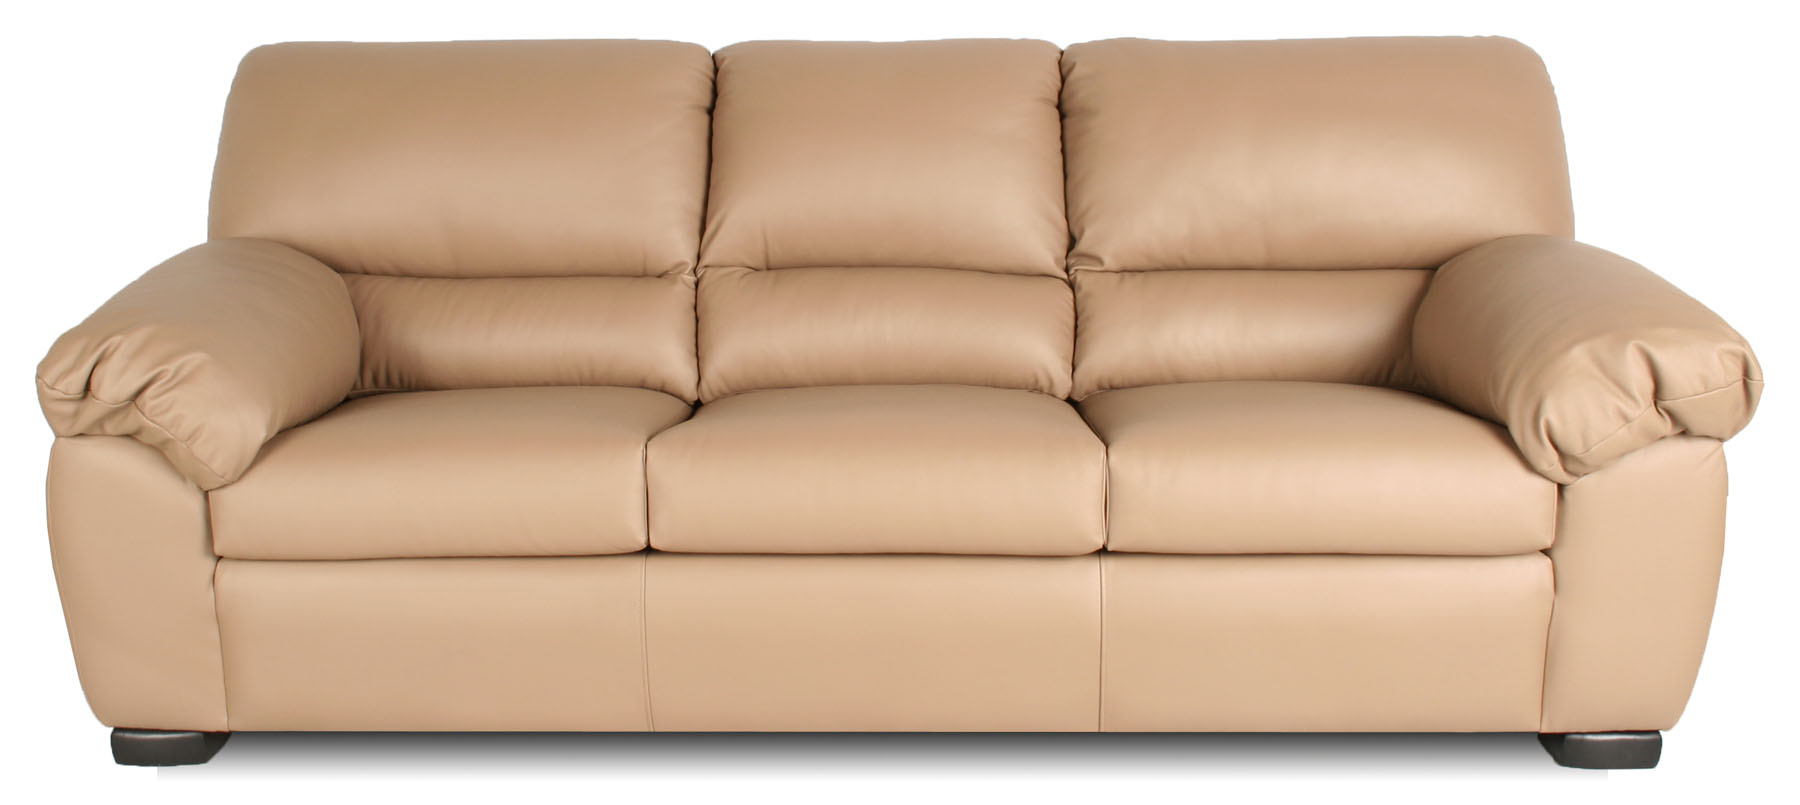 Dallas Leather Furniture, Blue Leather Sofa Dallas Tx